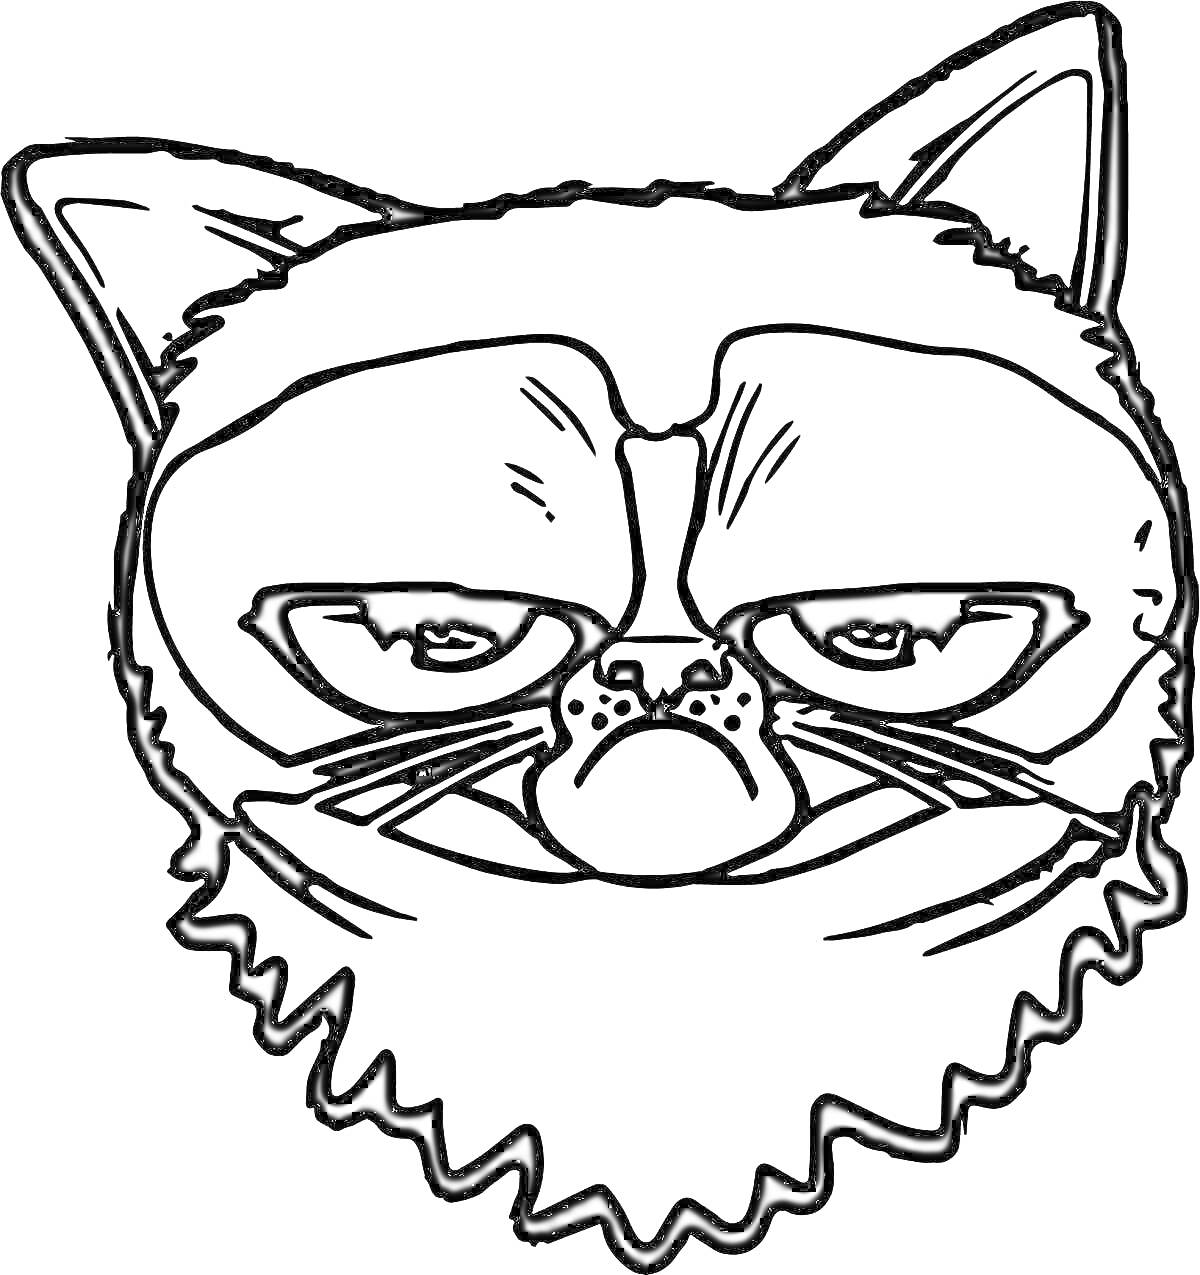 Раскраска злой кот с хмурым выражением морды, большие глаза, поднятые уши, густая шерсть на щеках